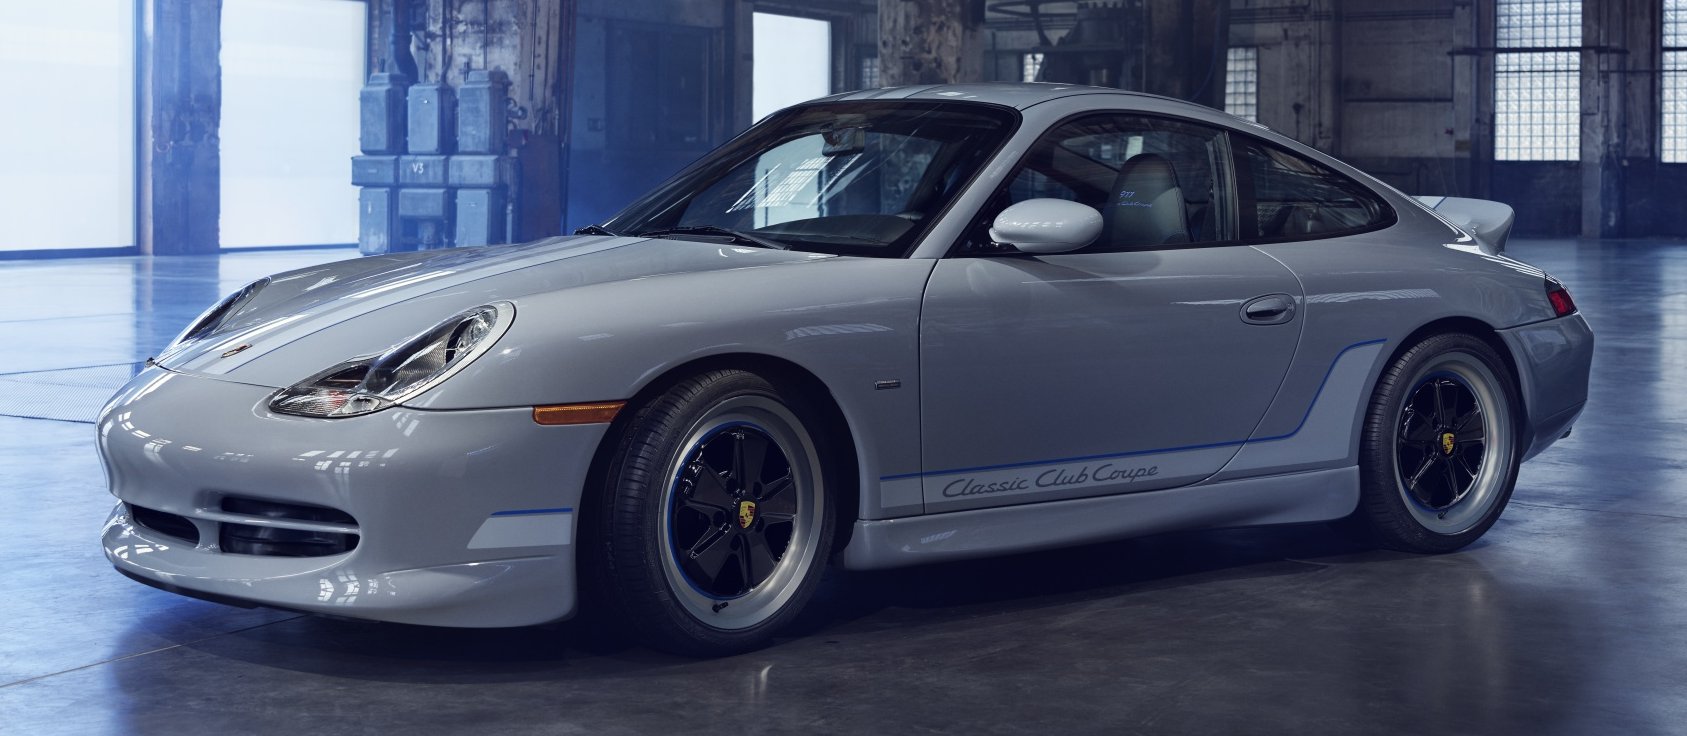 Utált csúfságból épített imádni való kincset a Porsche 7